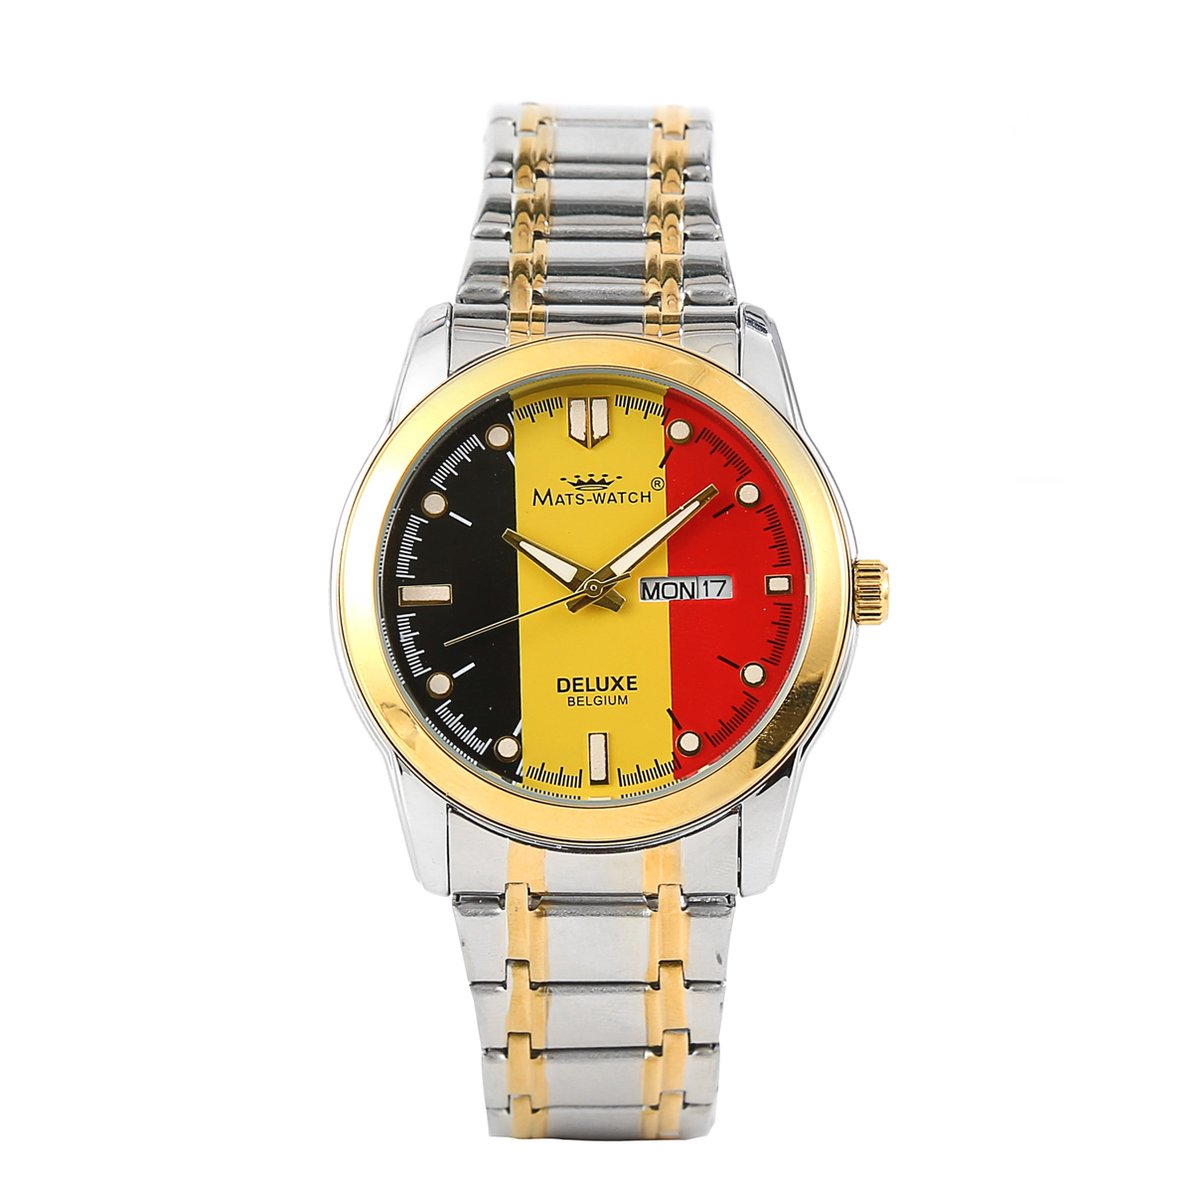 Mats-Watch - BELGIUM - Collectie voor Heren - Horloge voor hem- goud - Belgische Merk - Sieraden - Deluxe - Belgische kwaliteit - 25 jaar garantie - Limited Edition - horloge voor Heren